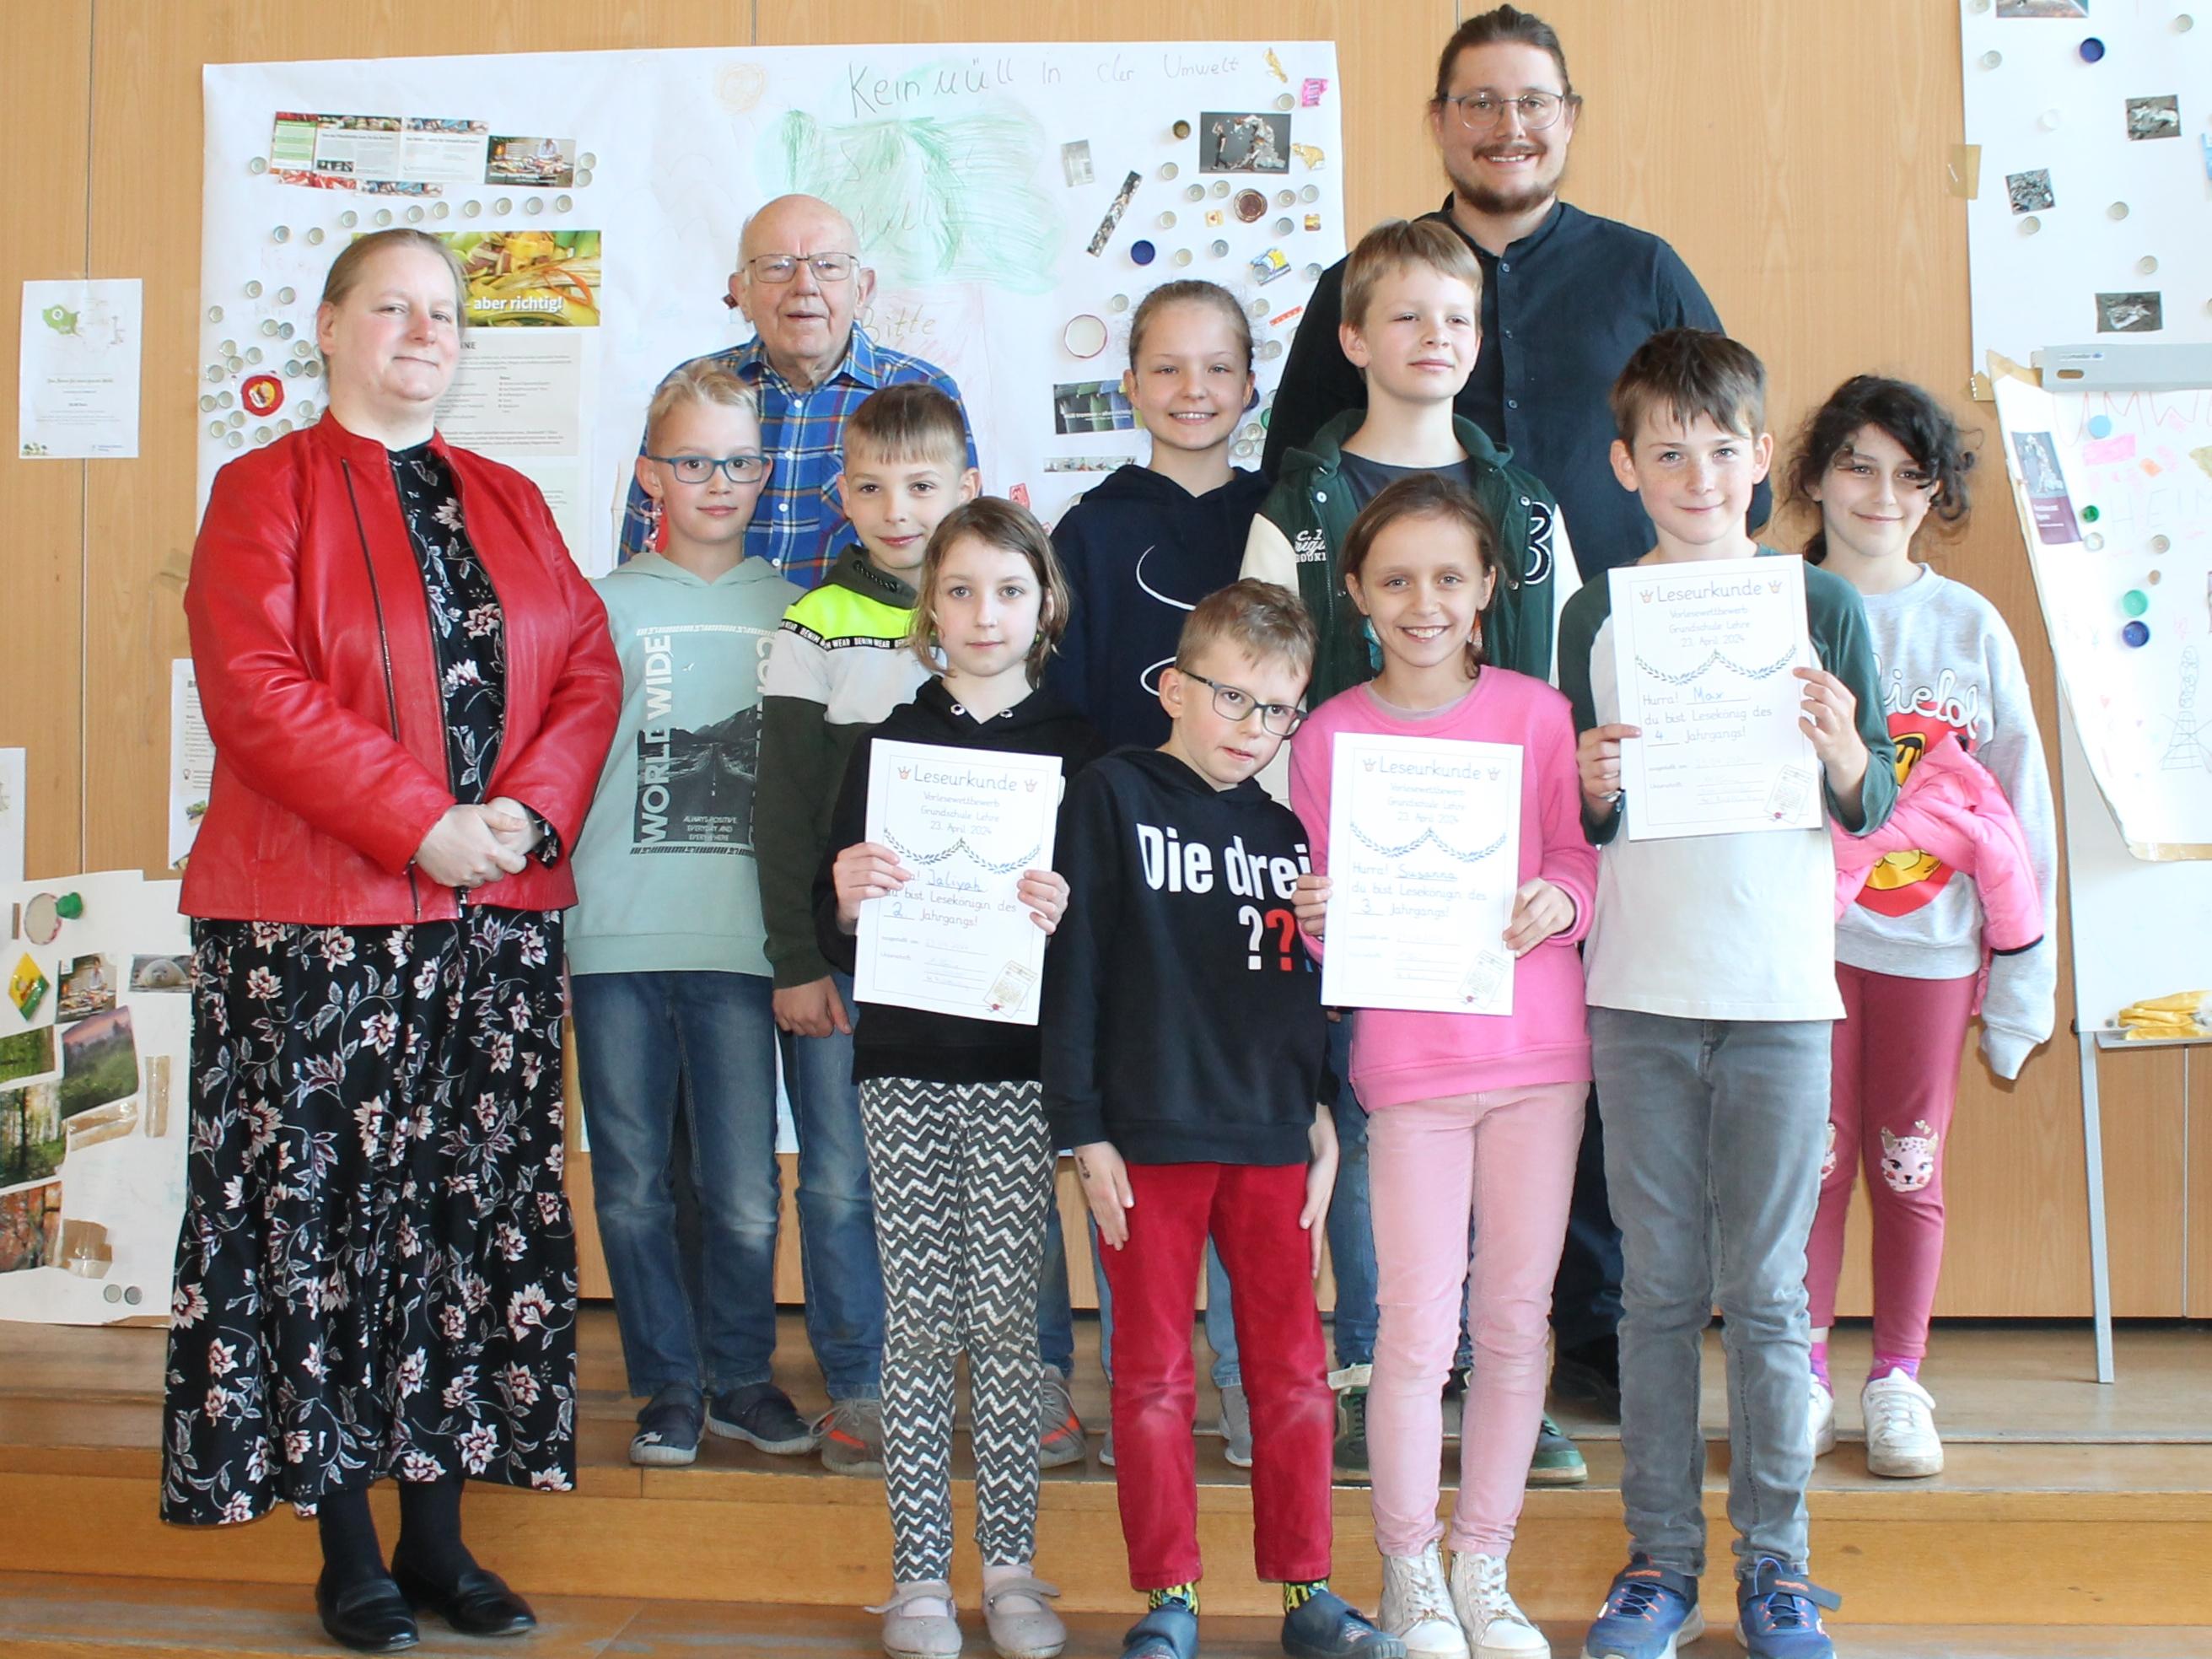 Foto (© Gemeinde Lehre): Alle Teilnehmenden des Vorlese-Wettbewerbs in der Grundschule Lehre und die Jury Diana Siedentopf, Hartwig Möllenberg und Maximilian Hömme.